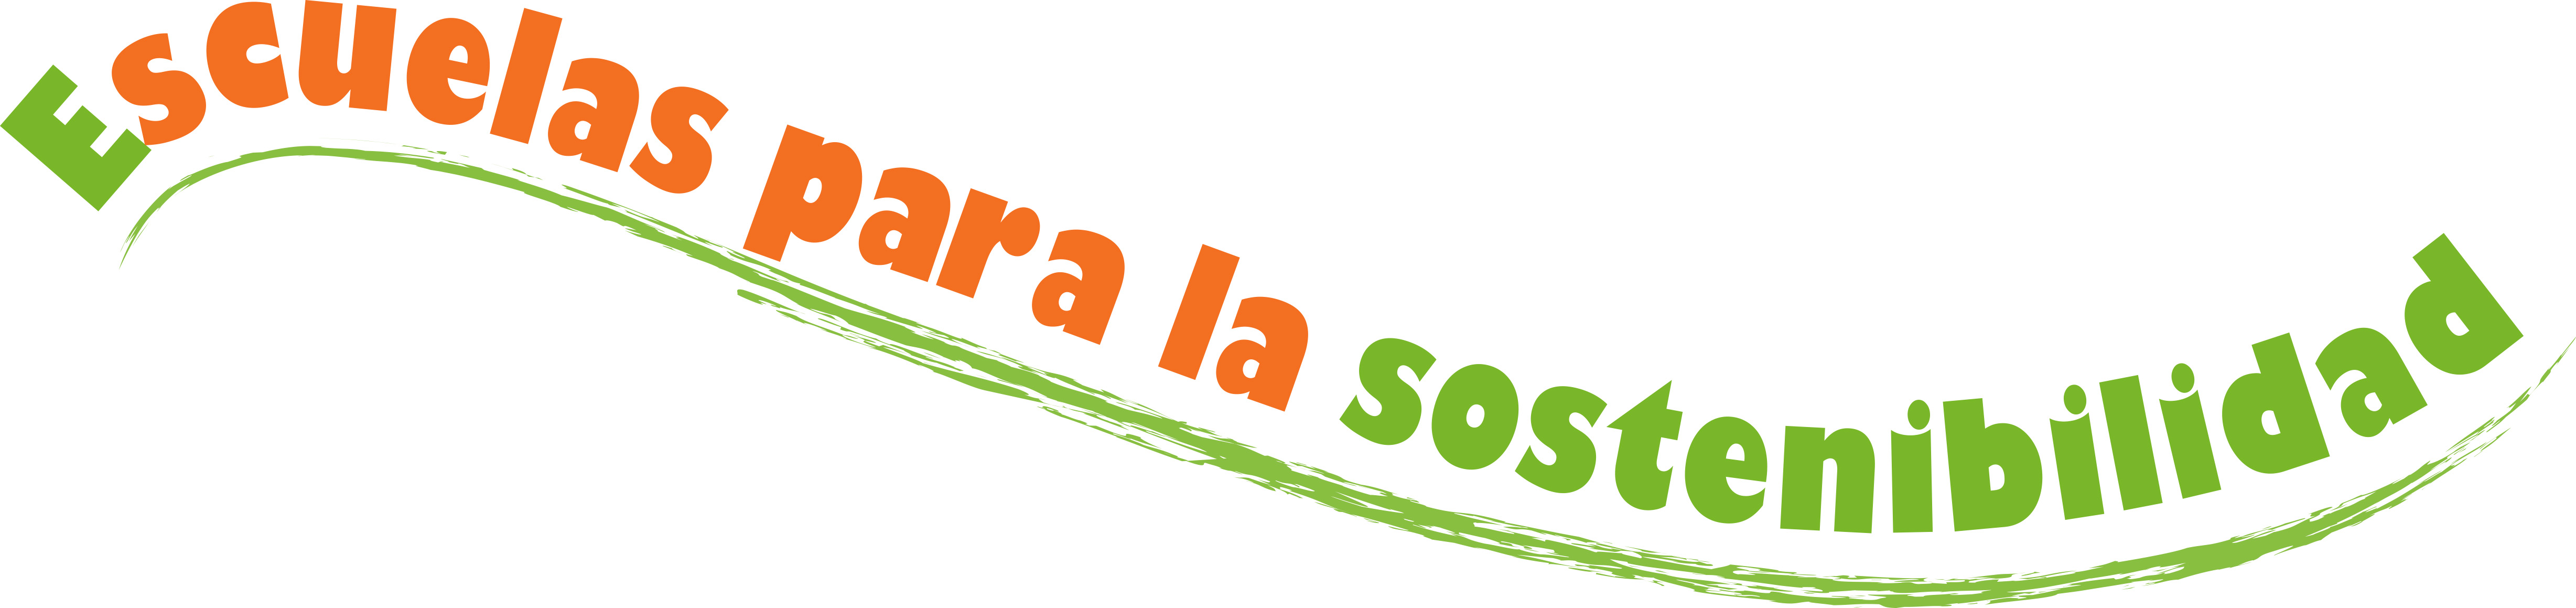 Logo escuelas sostenibles